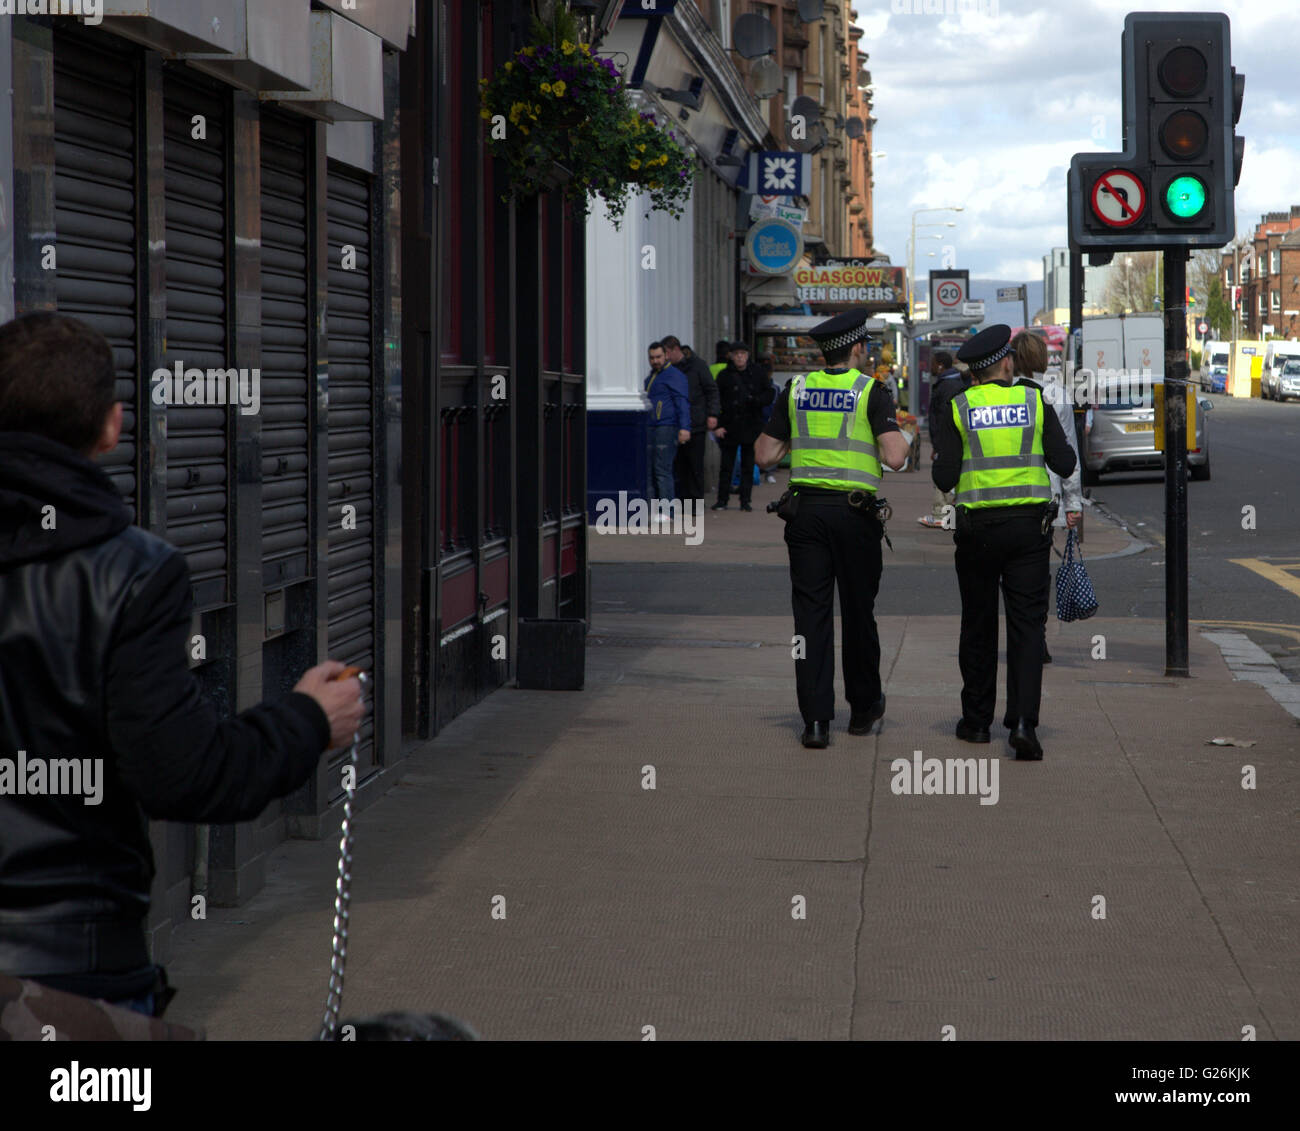 Polizei auf Streife im schlimmsten Bereich von Schottland, Glasgow Glasgow, Schottland, Vereinigtes Königreich. Stockfoto